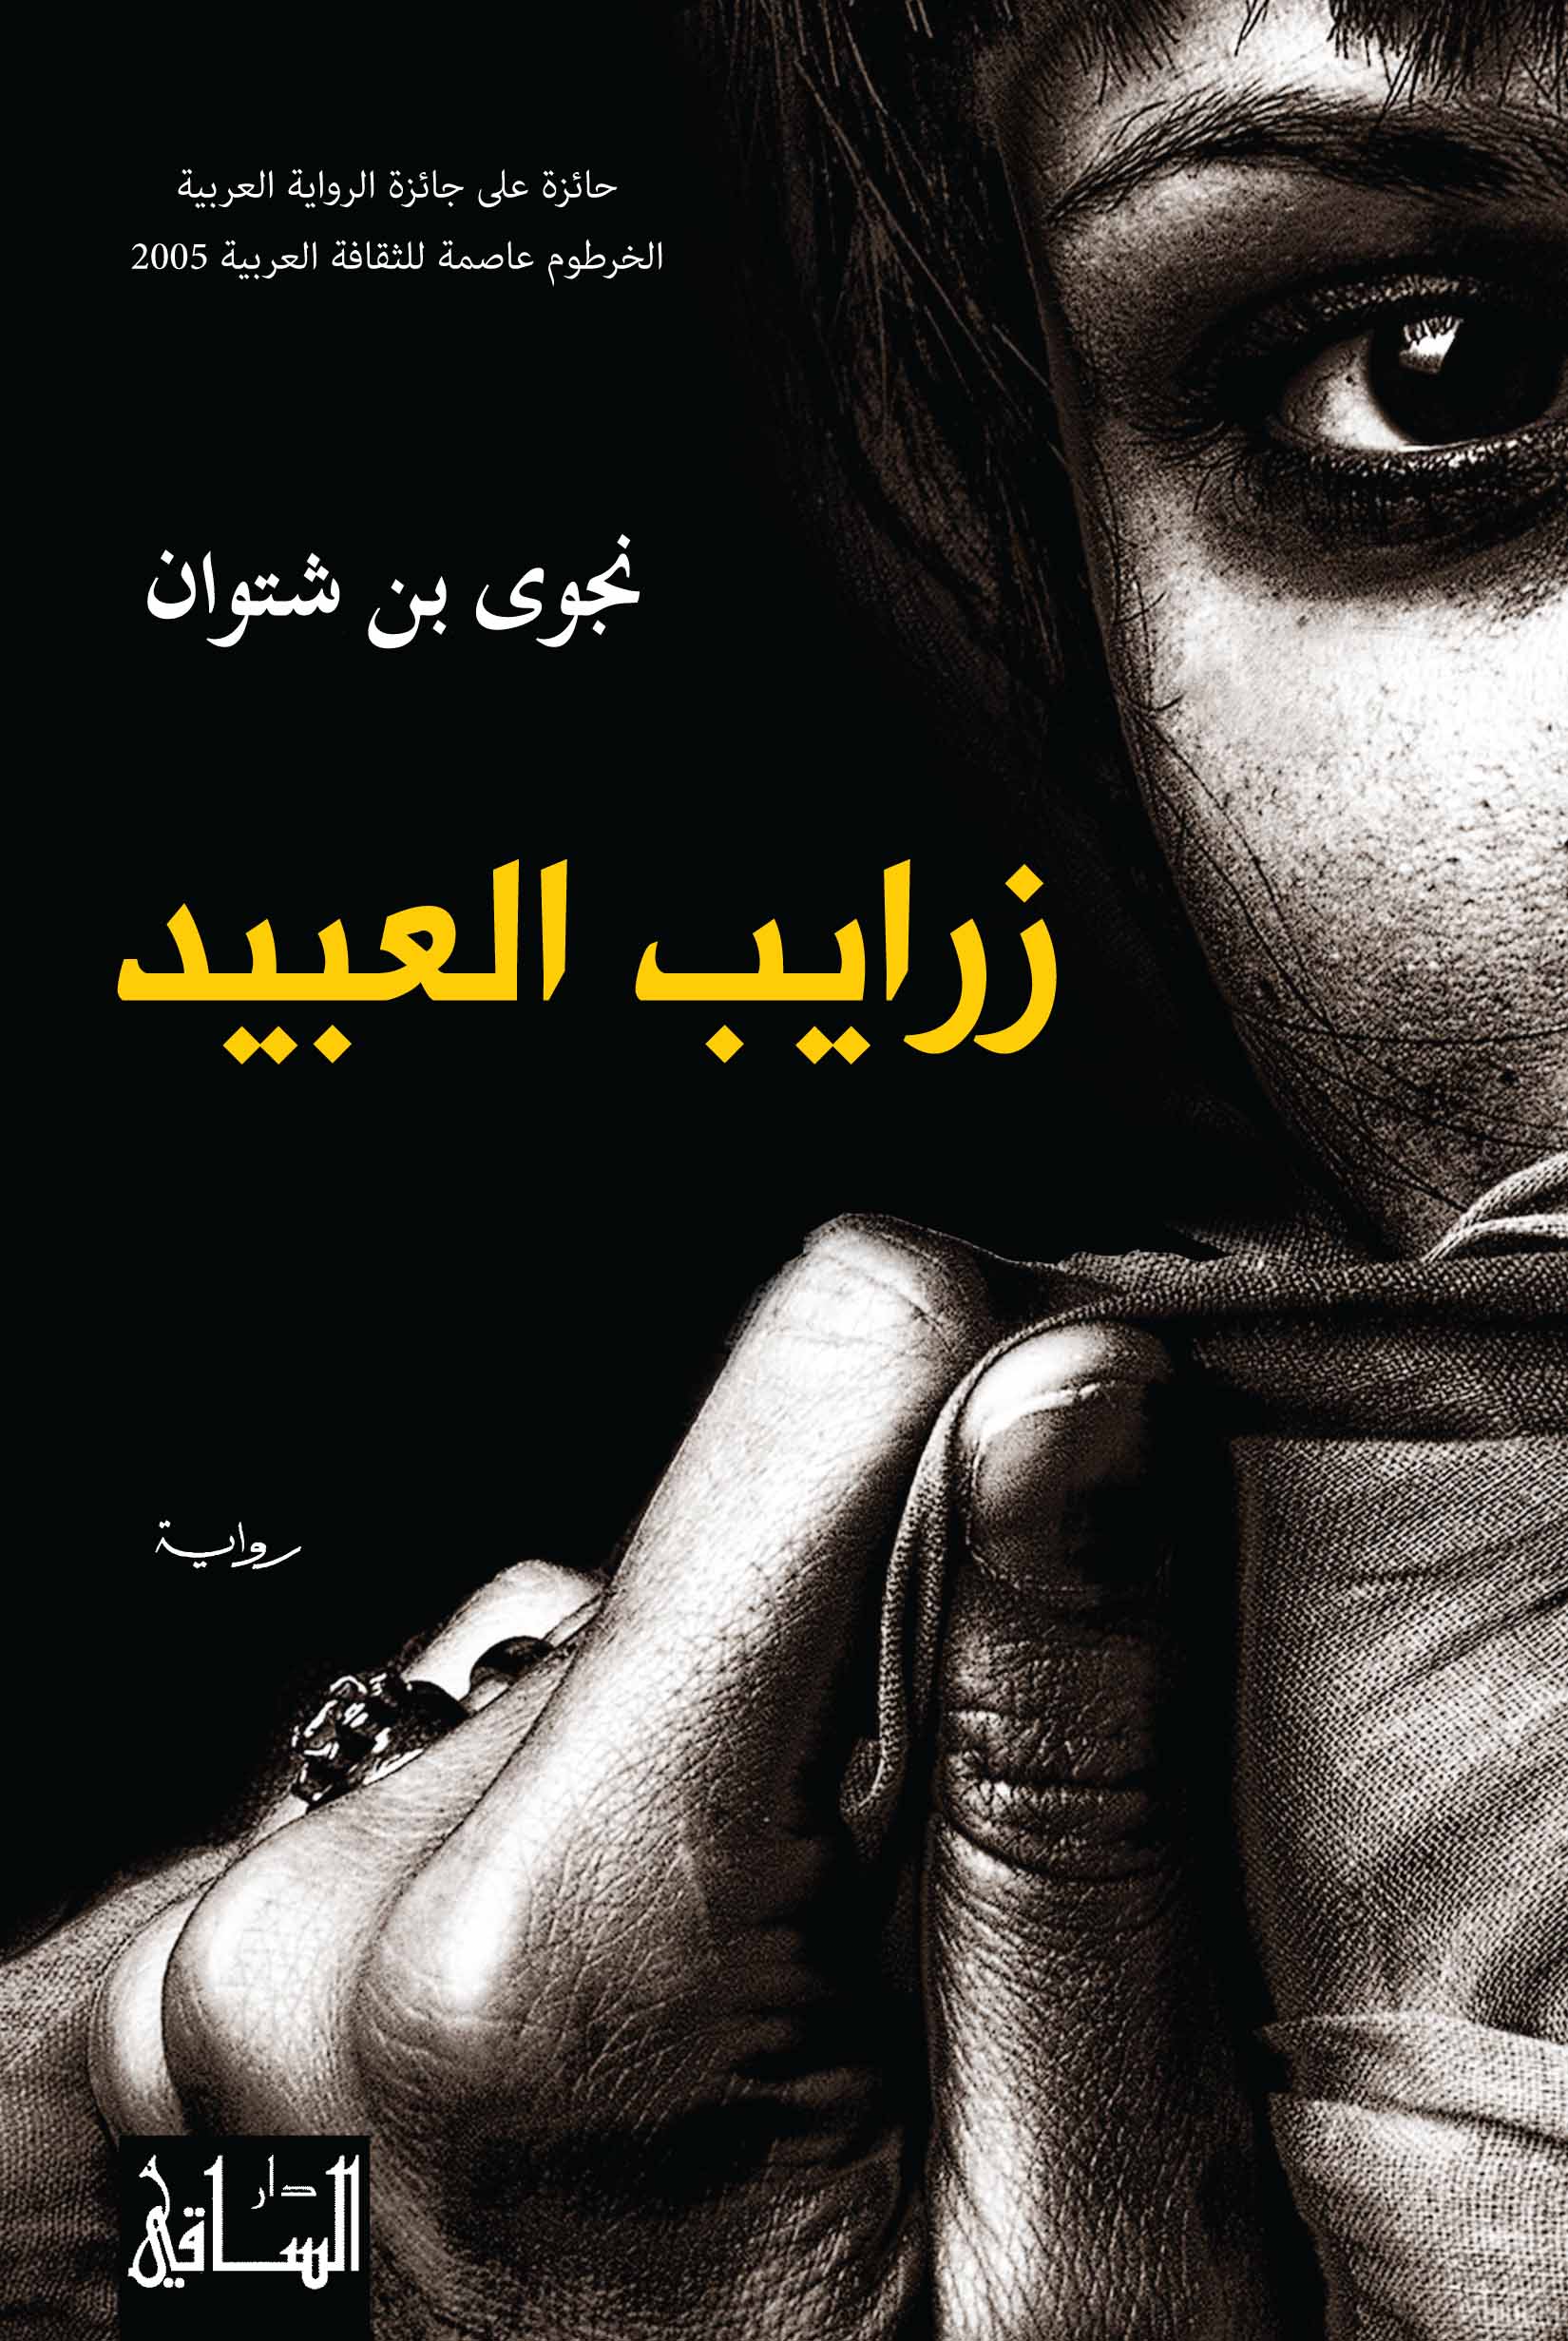 غلاف رواية "زرايب العبيد" للكاتبة الليبية نجوى بن شتوان